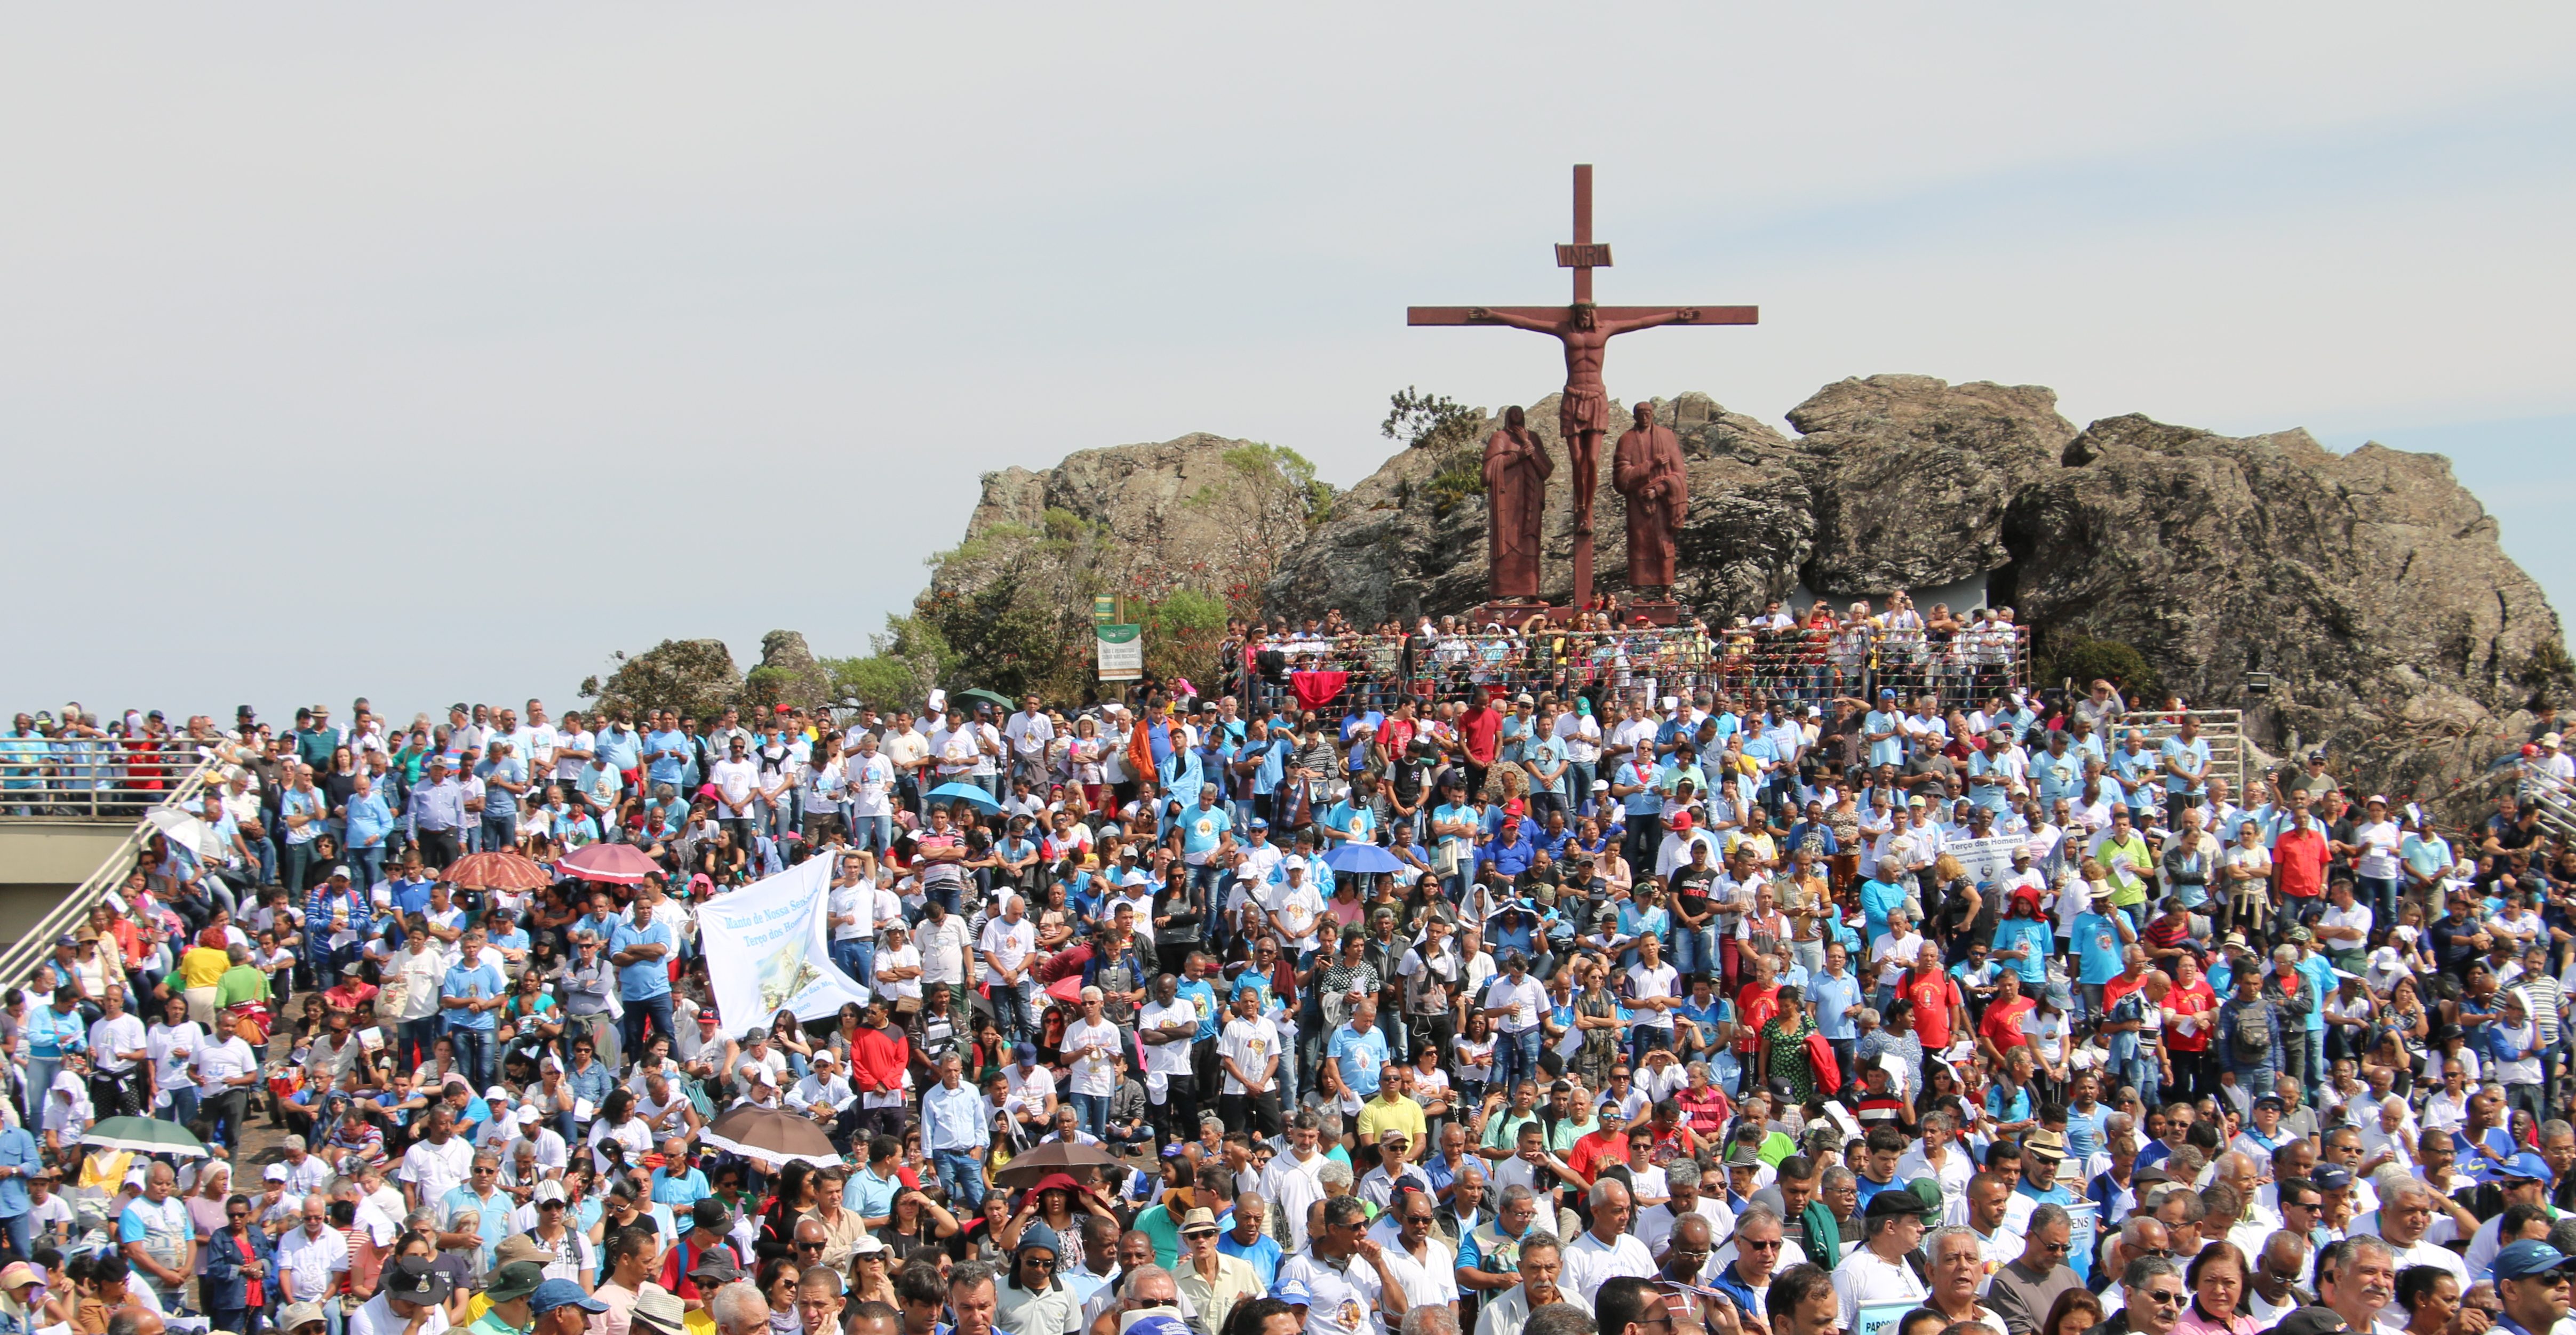 Terço dos homens: Milhares de fiéis vivenciam a fé no Santuário da Padroeira de Minas